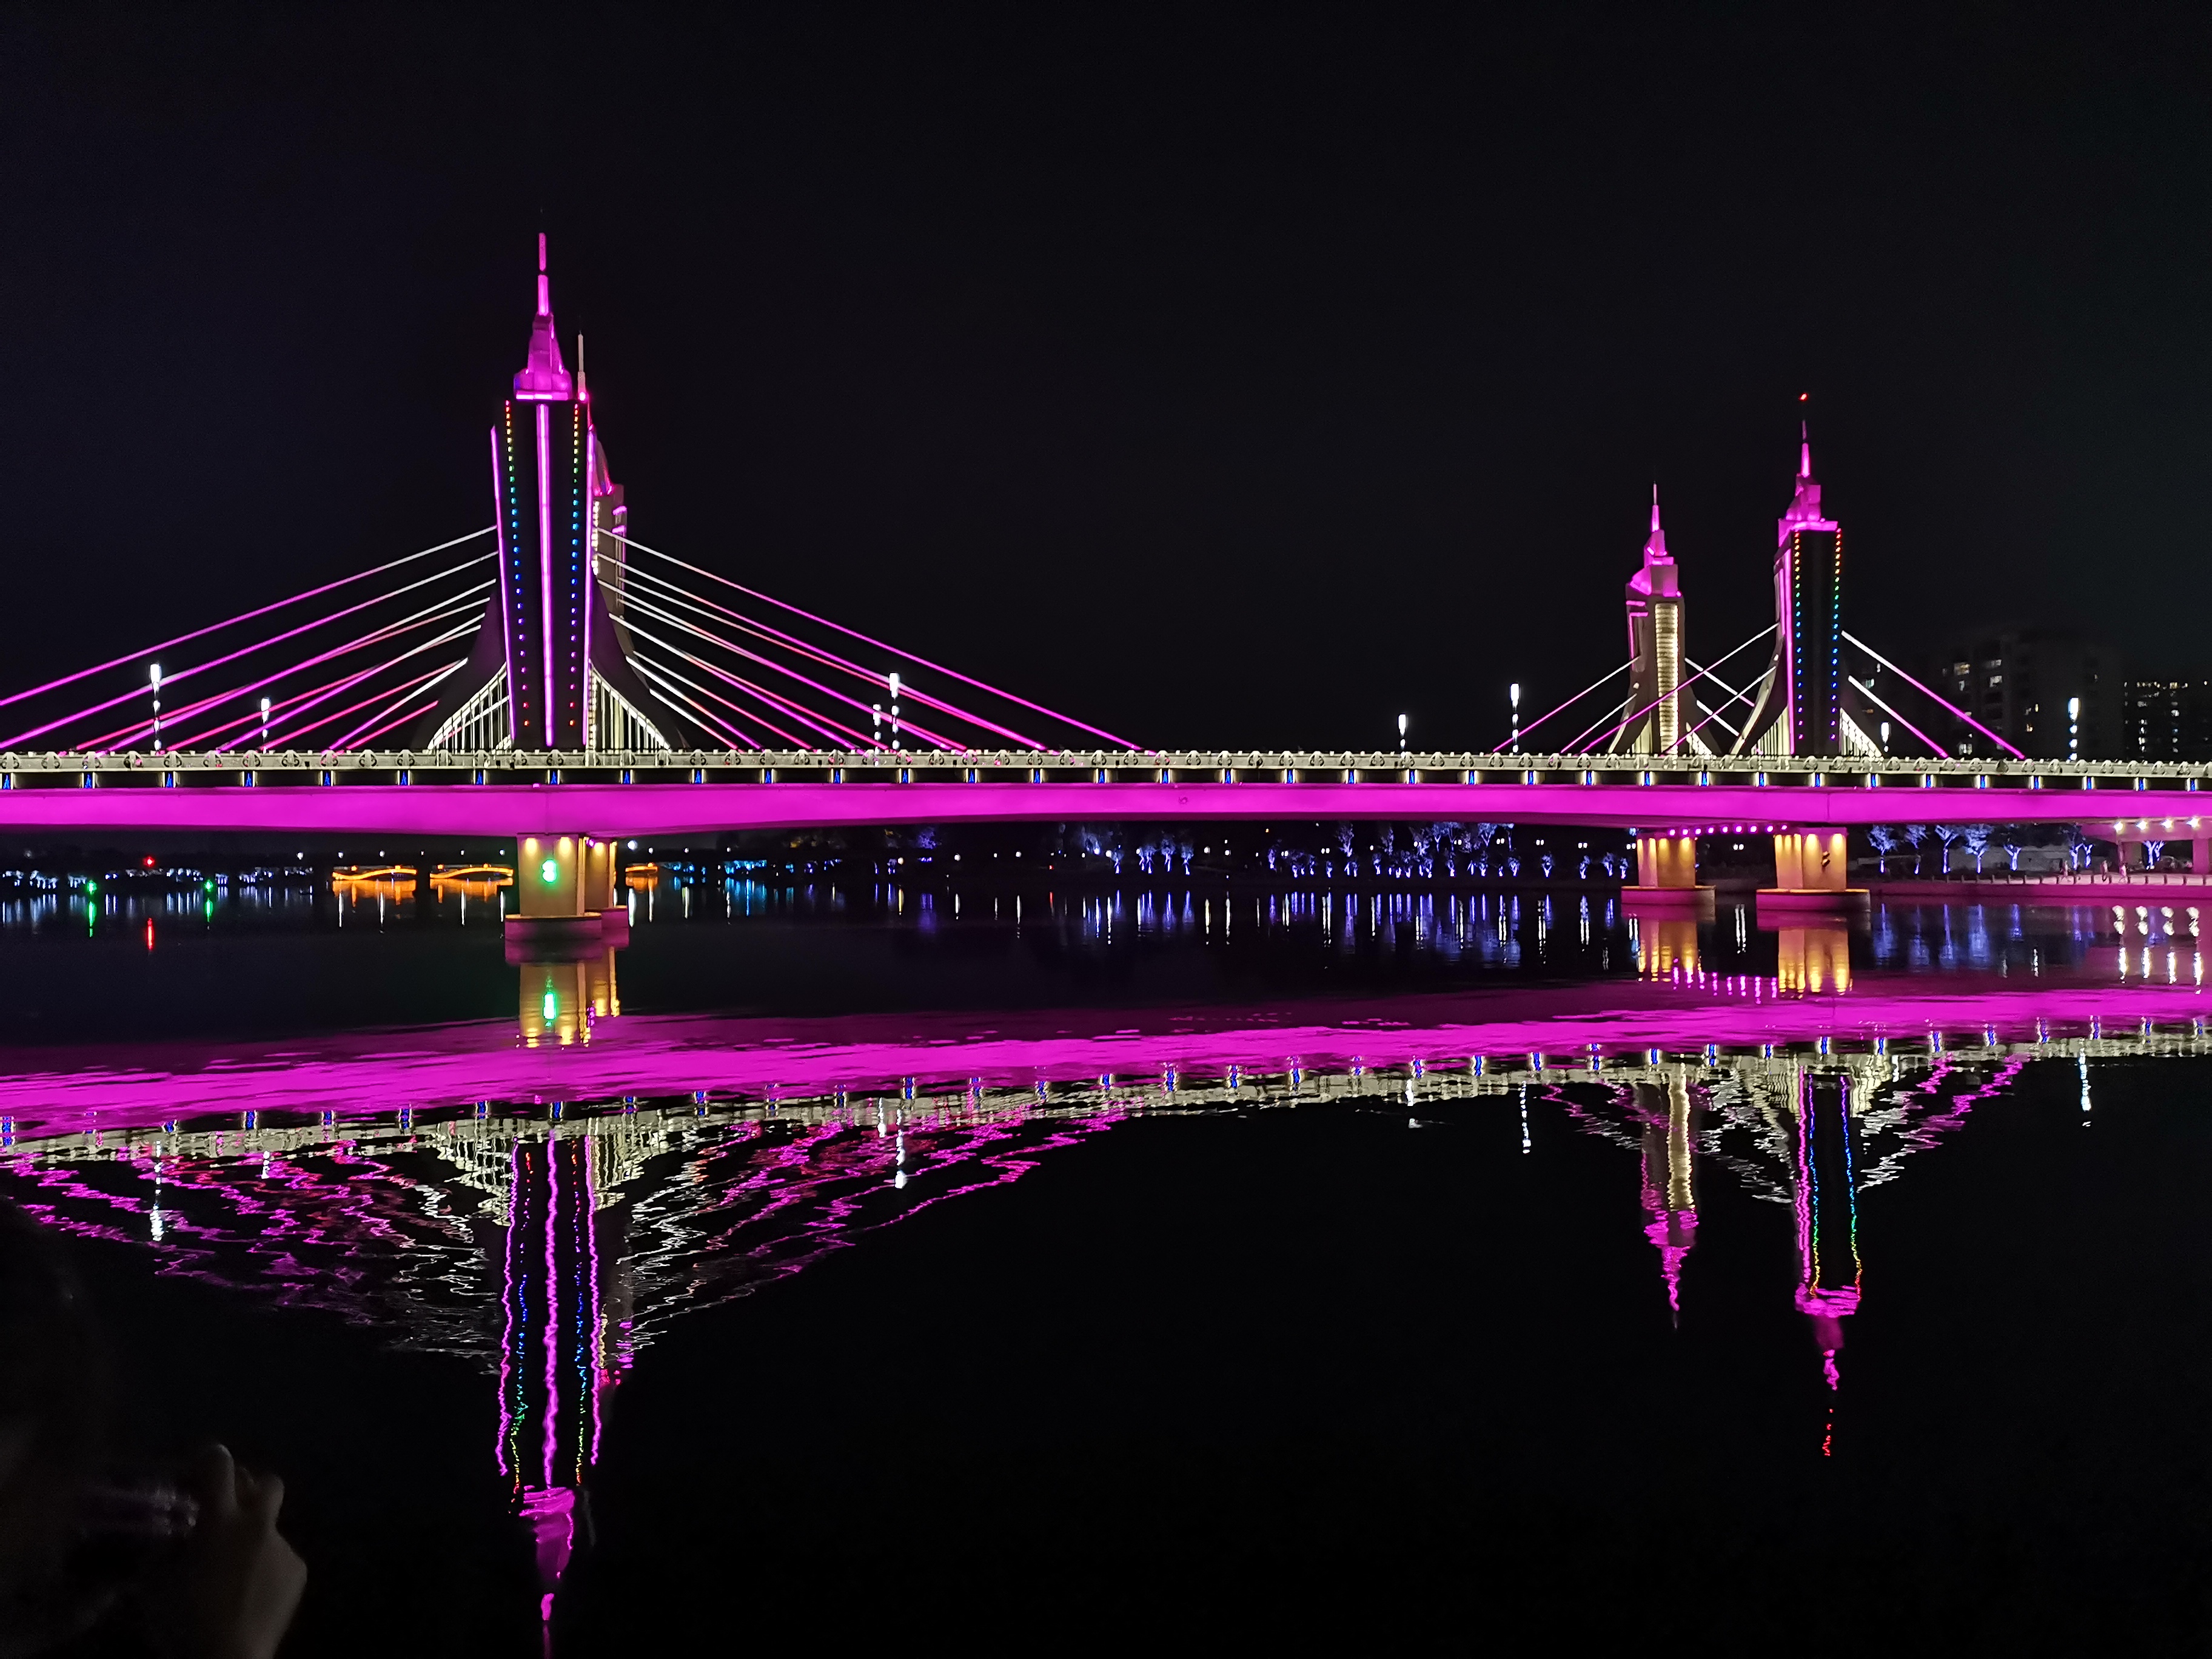 大运河灯光秀今晚首秀中国最宽桥体水幕展示通州八景